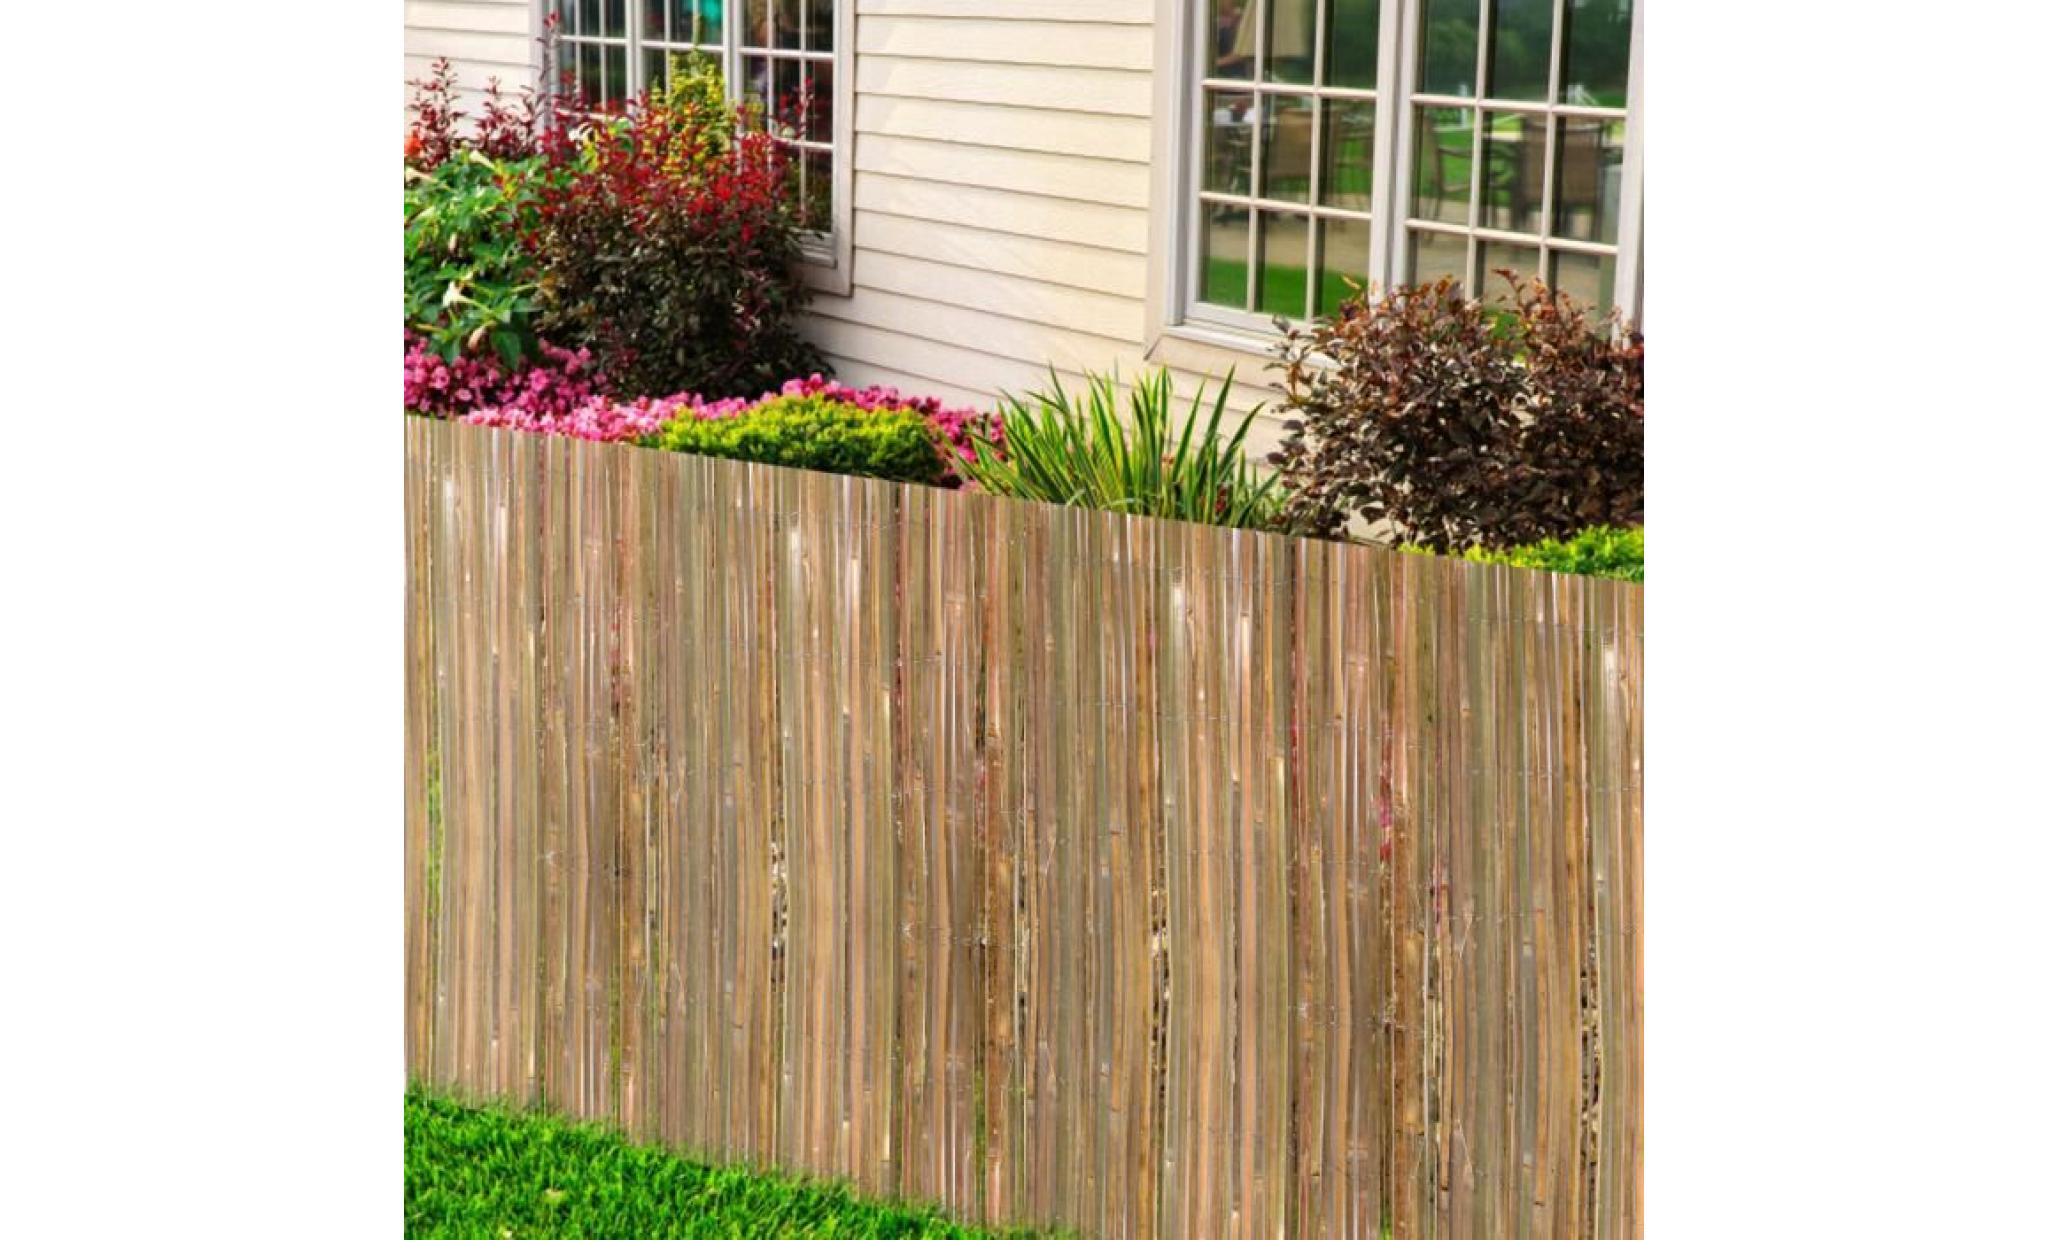 notre clôture peut être utilisé de plusieurs façons, comme par exemple : clôturer votre espace de jardin privé, embellir votre ba...